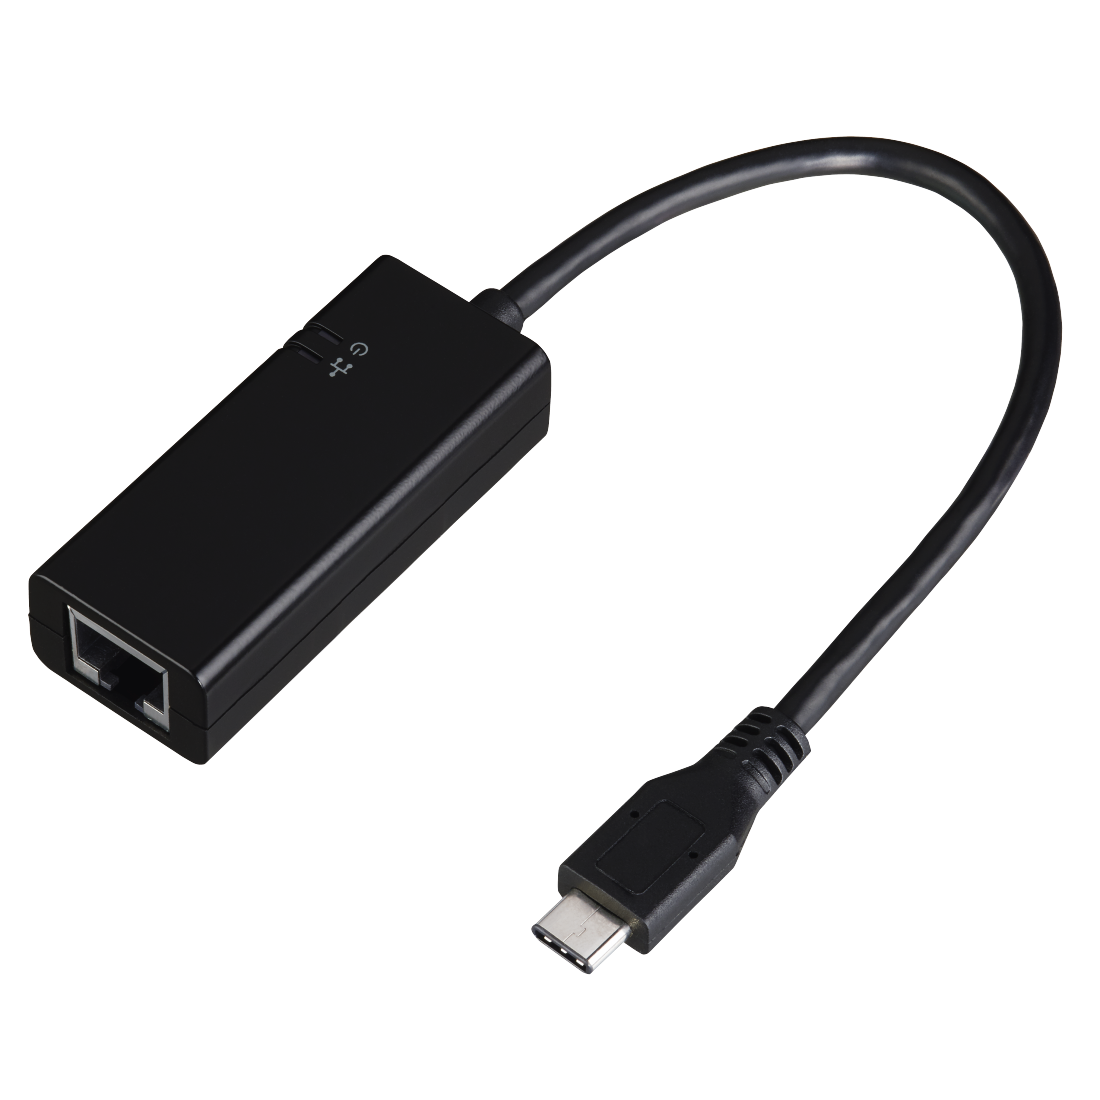 00053190 Hama Type-C USB 3.1 Gigabit Ethernet Adapter, 10/100/1000 Mbps